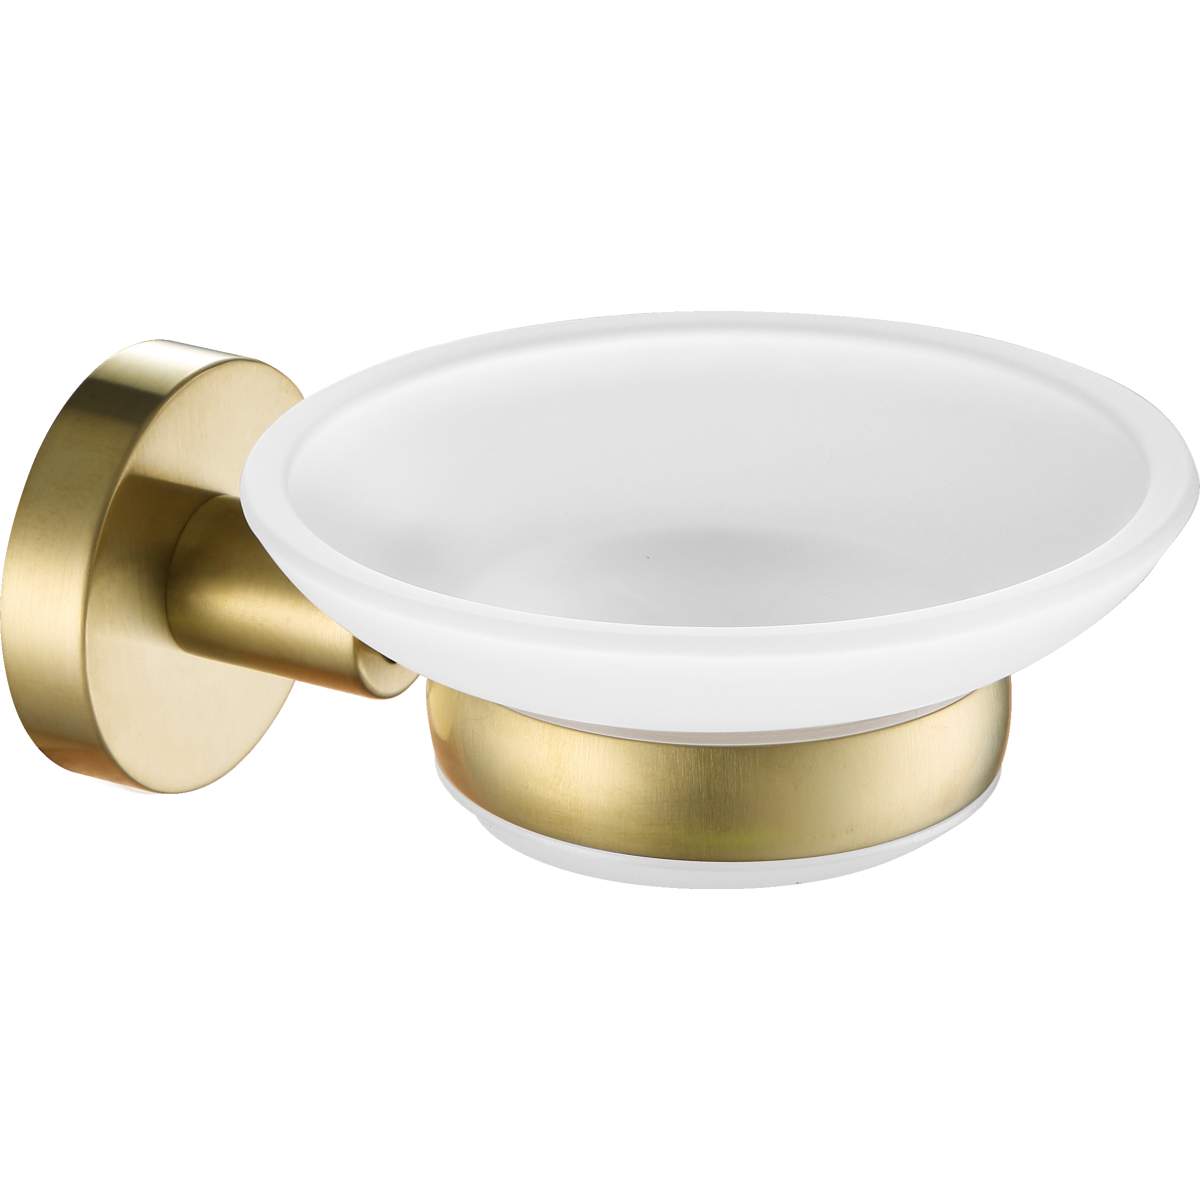 JTP Vos Brushed Brass Soap Dish (23131BBR)